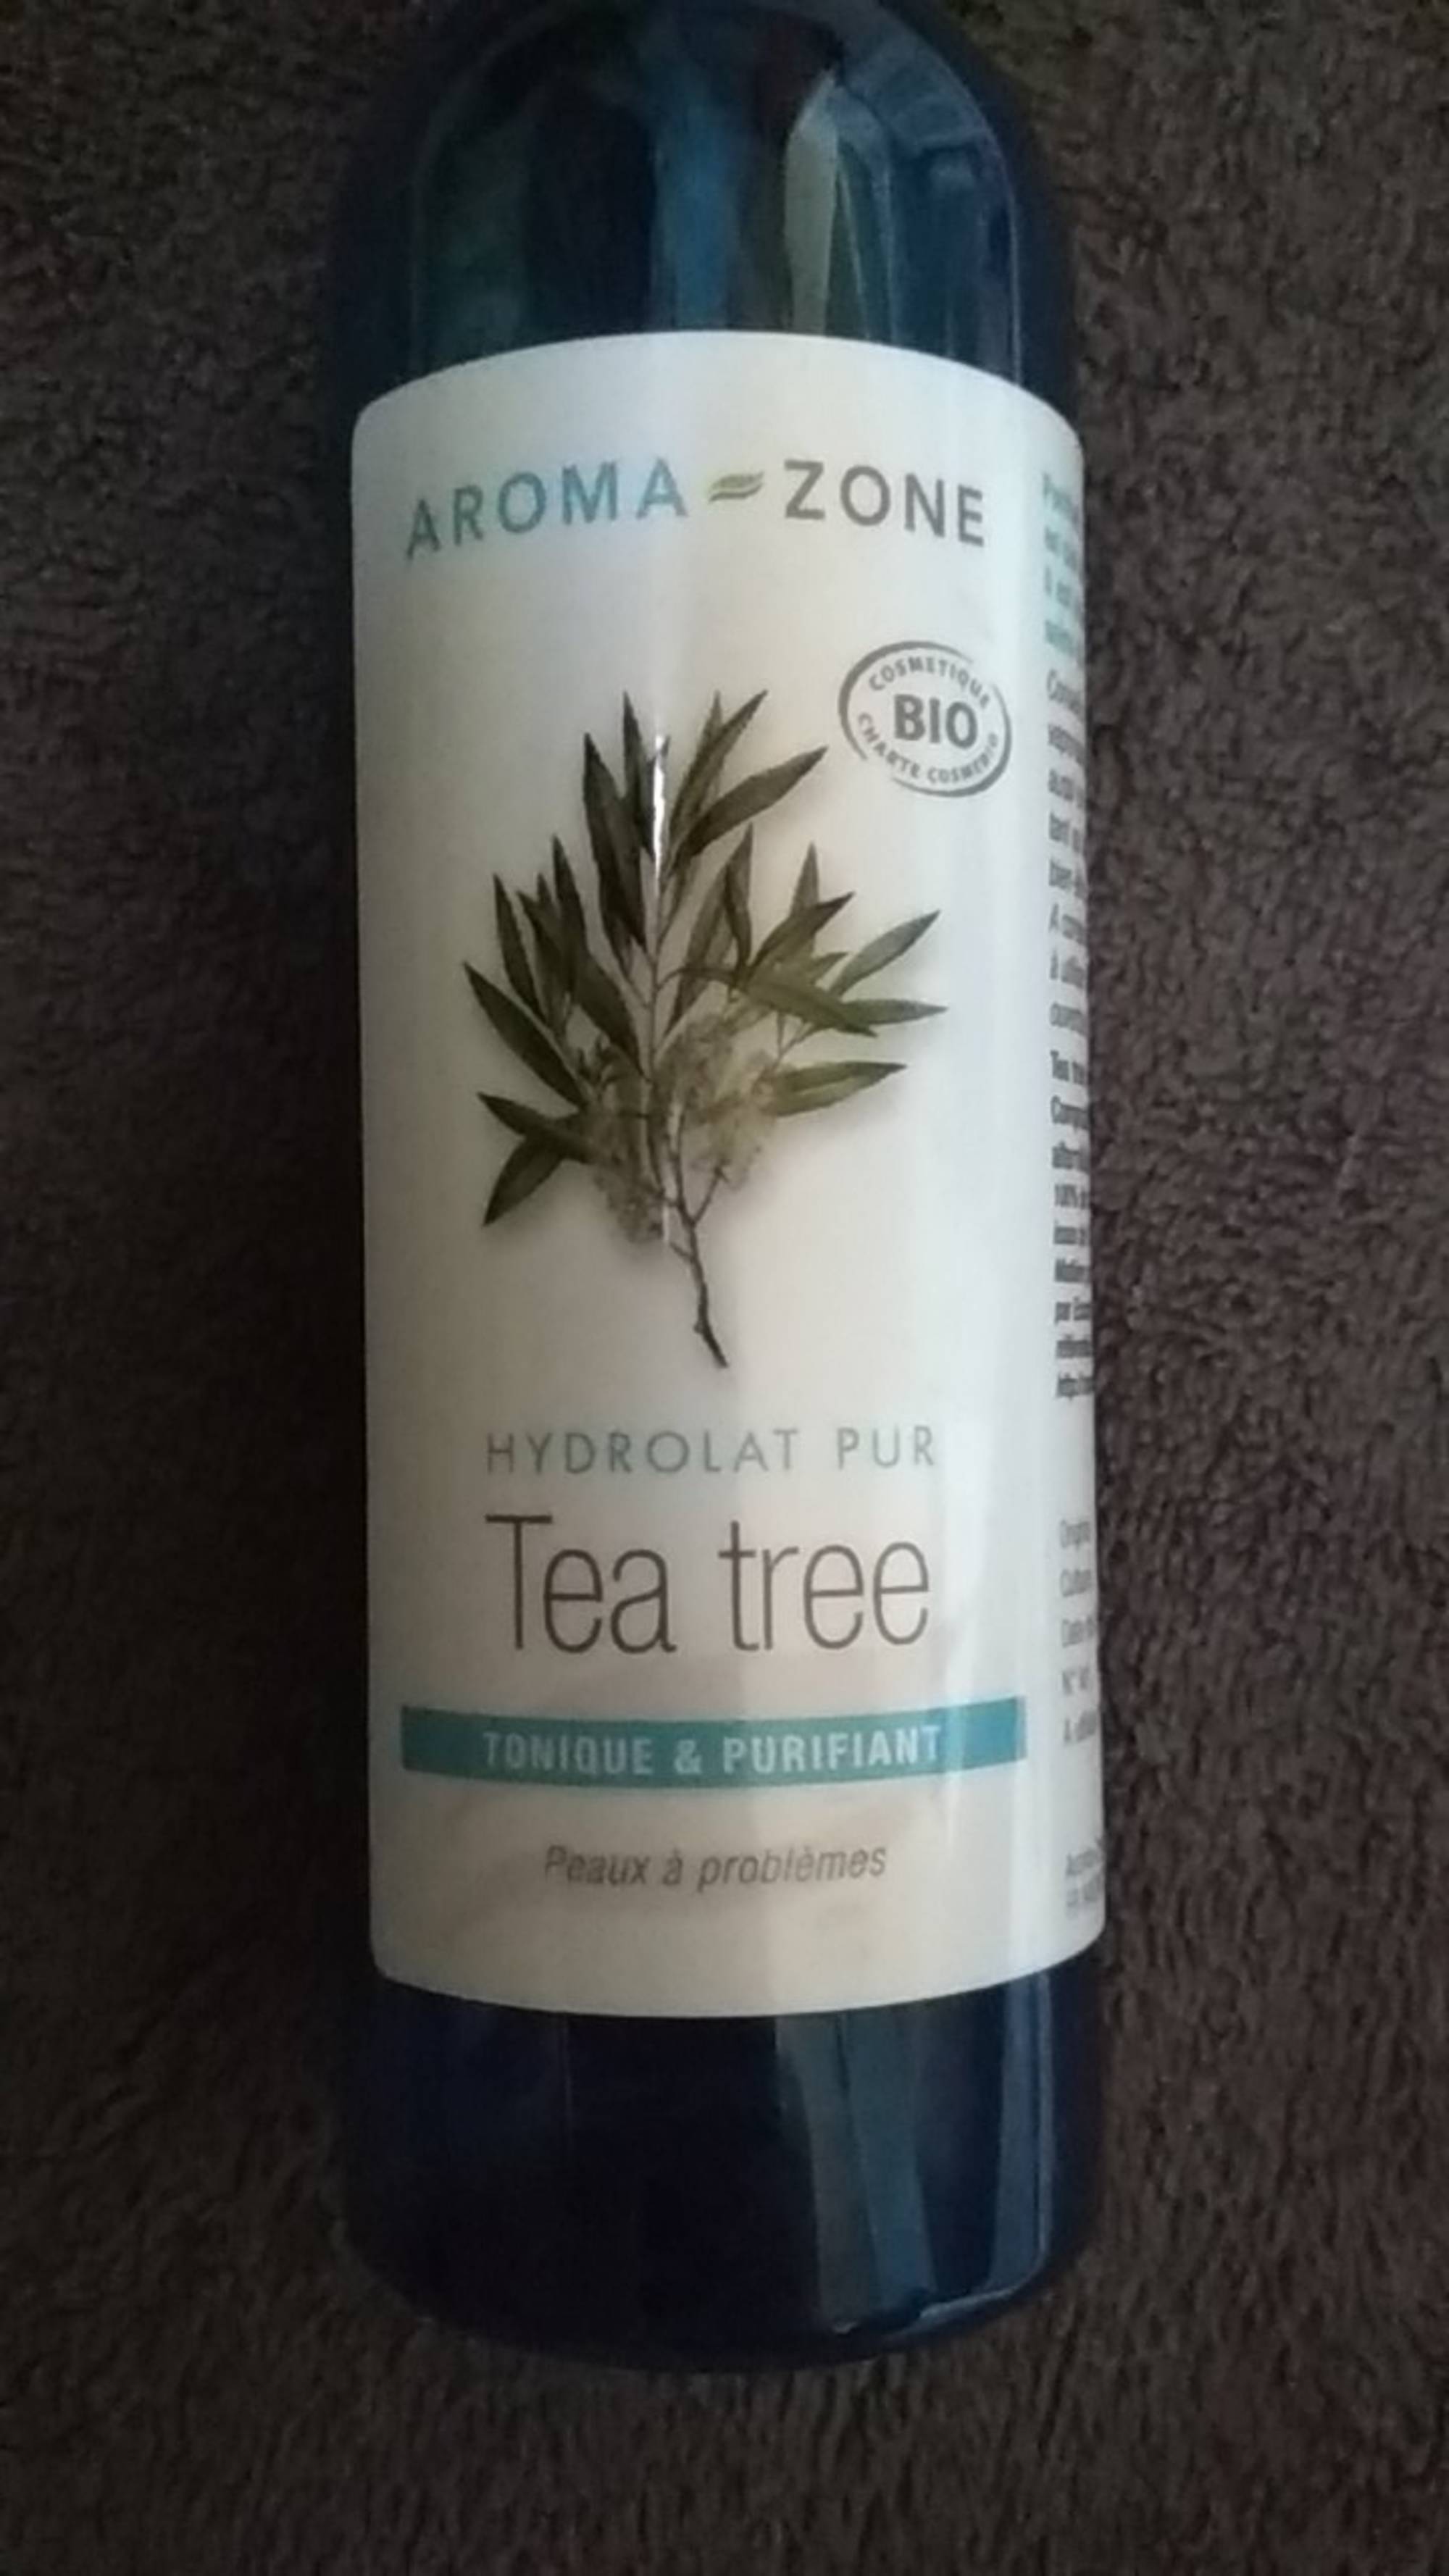 Composition AROMA-ZONE Hydrolat pur tea tree tonique et purifiant